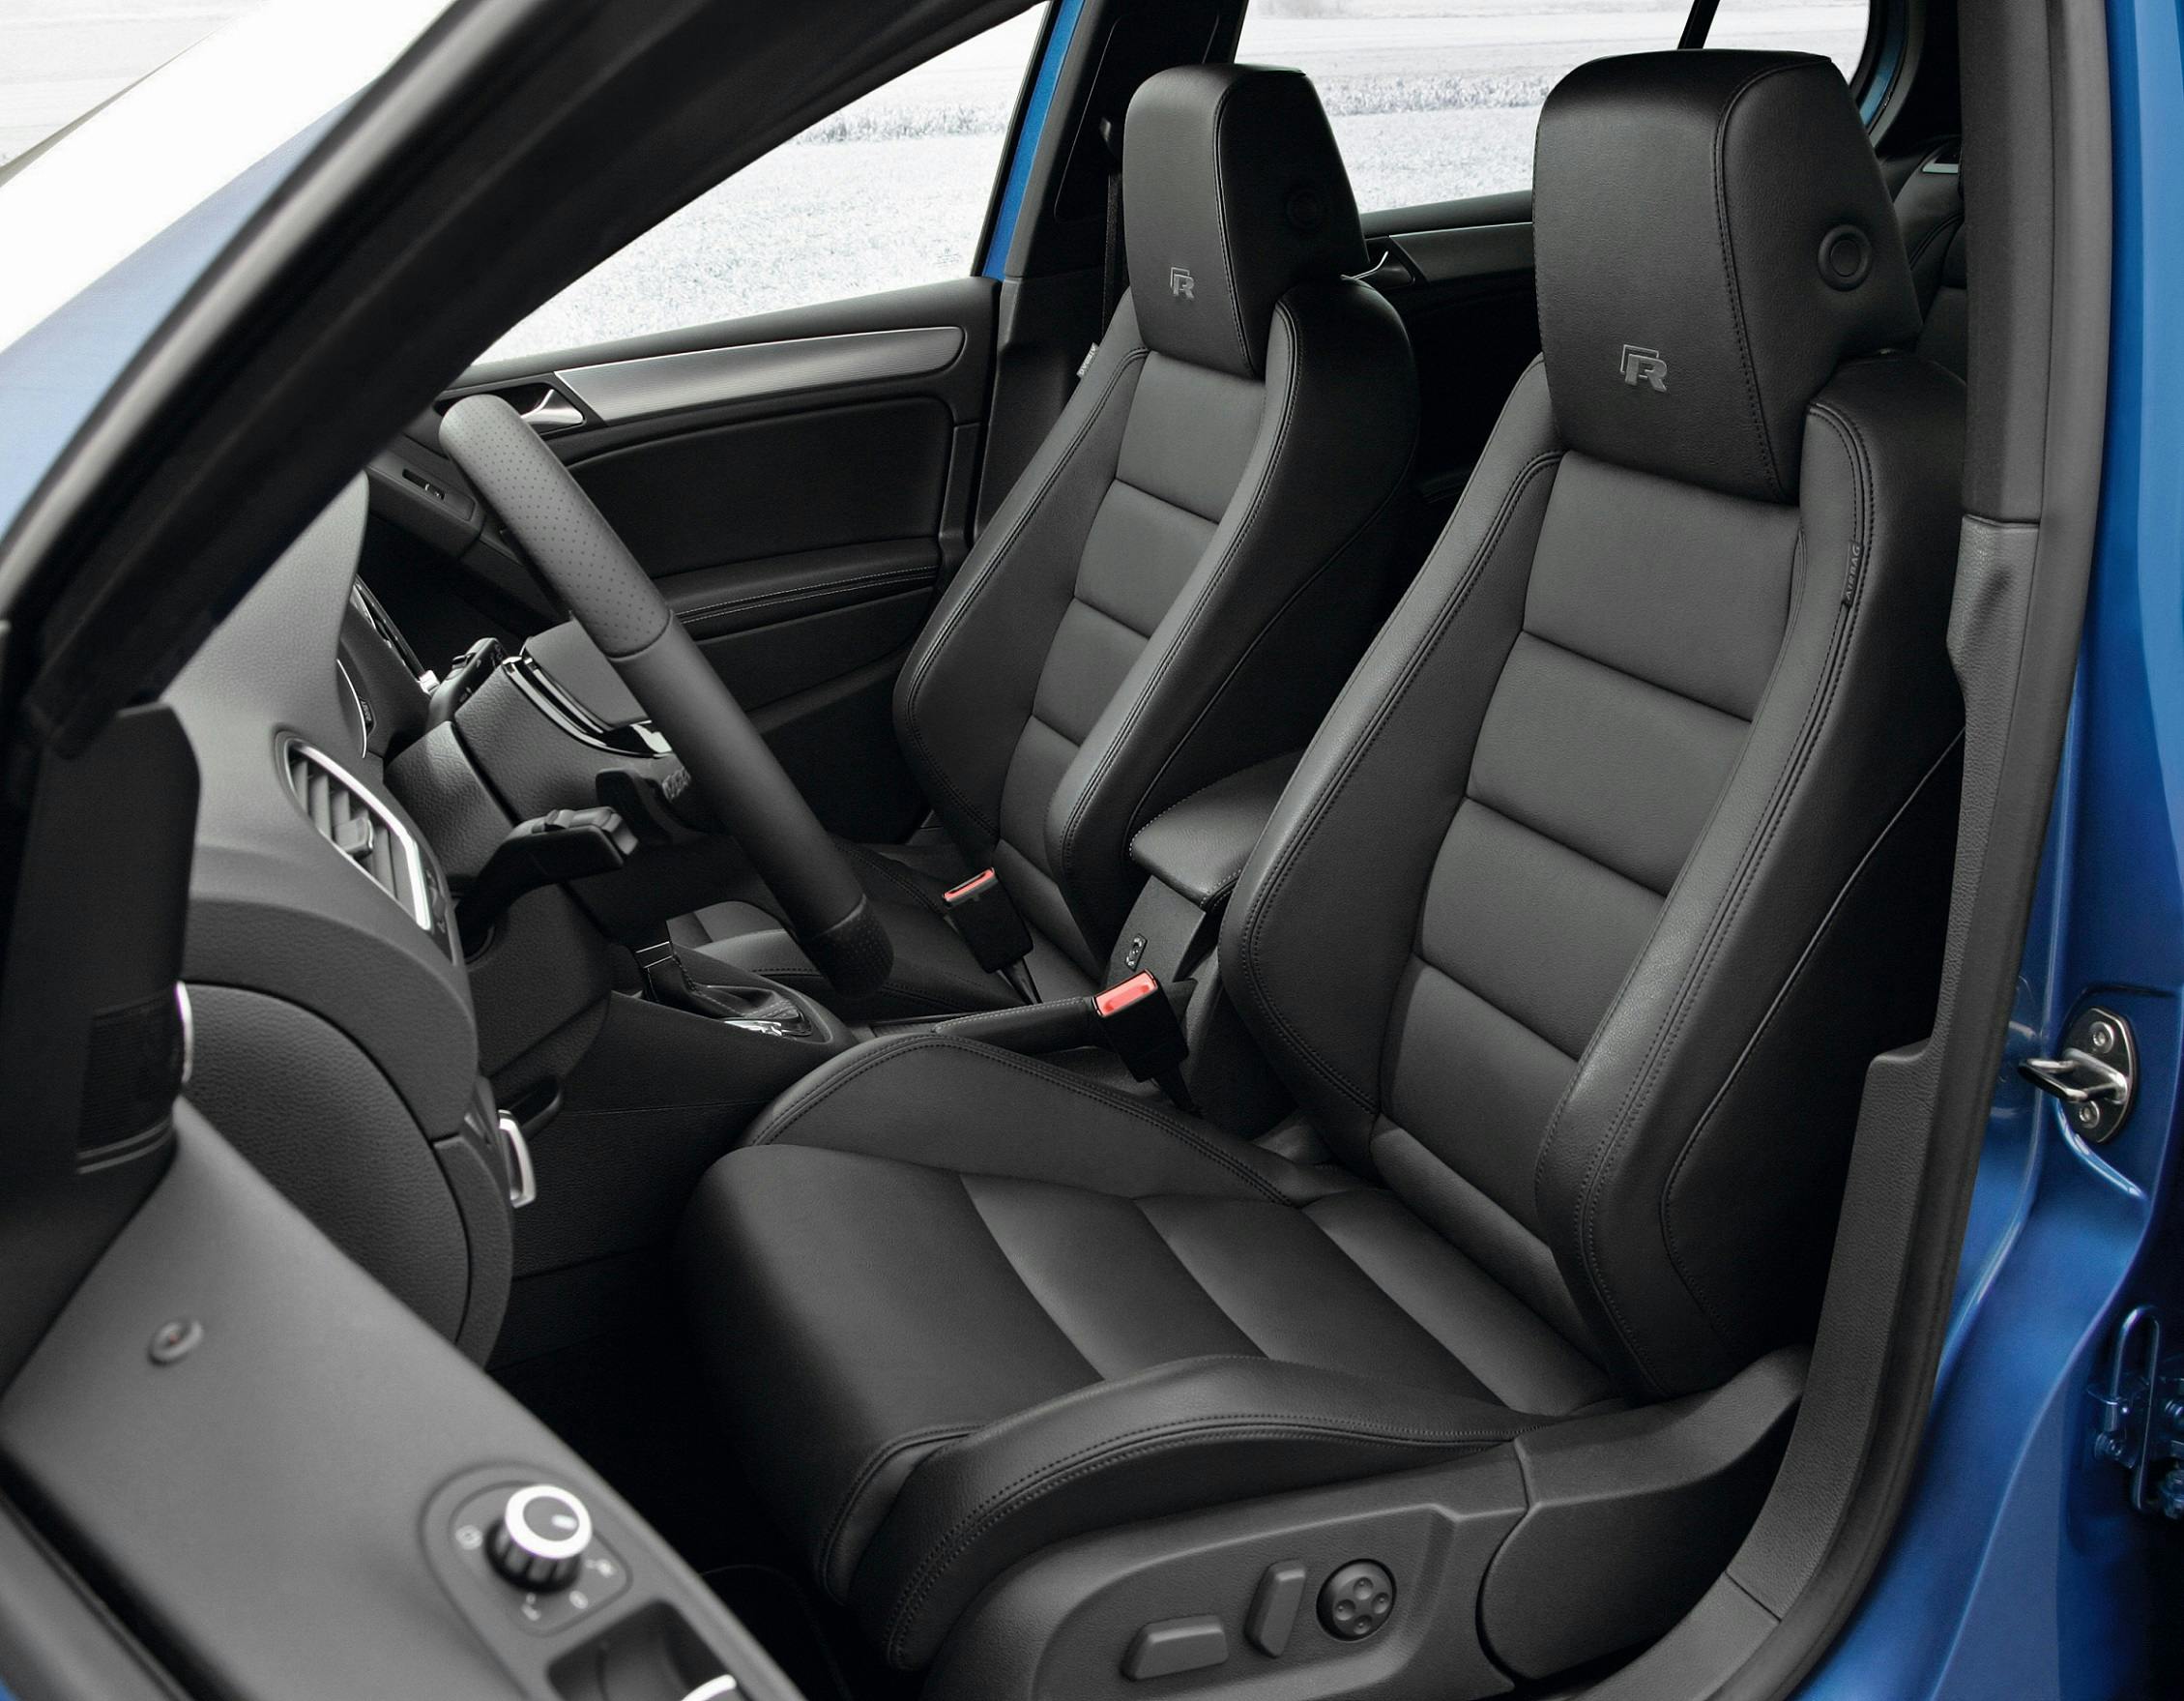 VW Golf VI Typ 5K, Baujahr 2008 bis 2012 ▻ Technische Daten zu allen  Motorisierungen - AUTO MOTOR UND SPORT